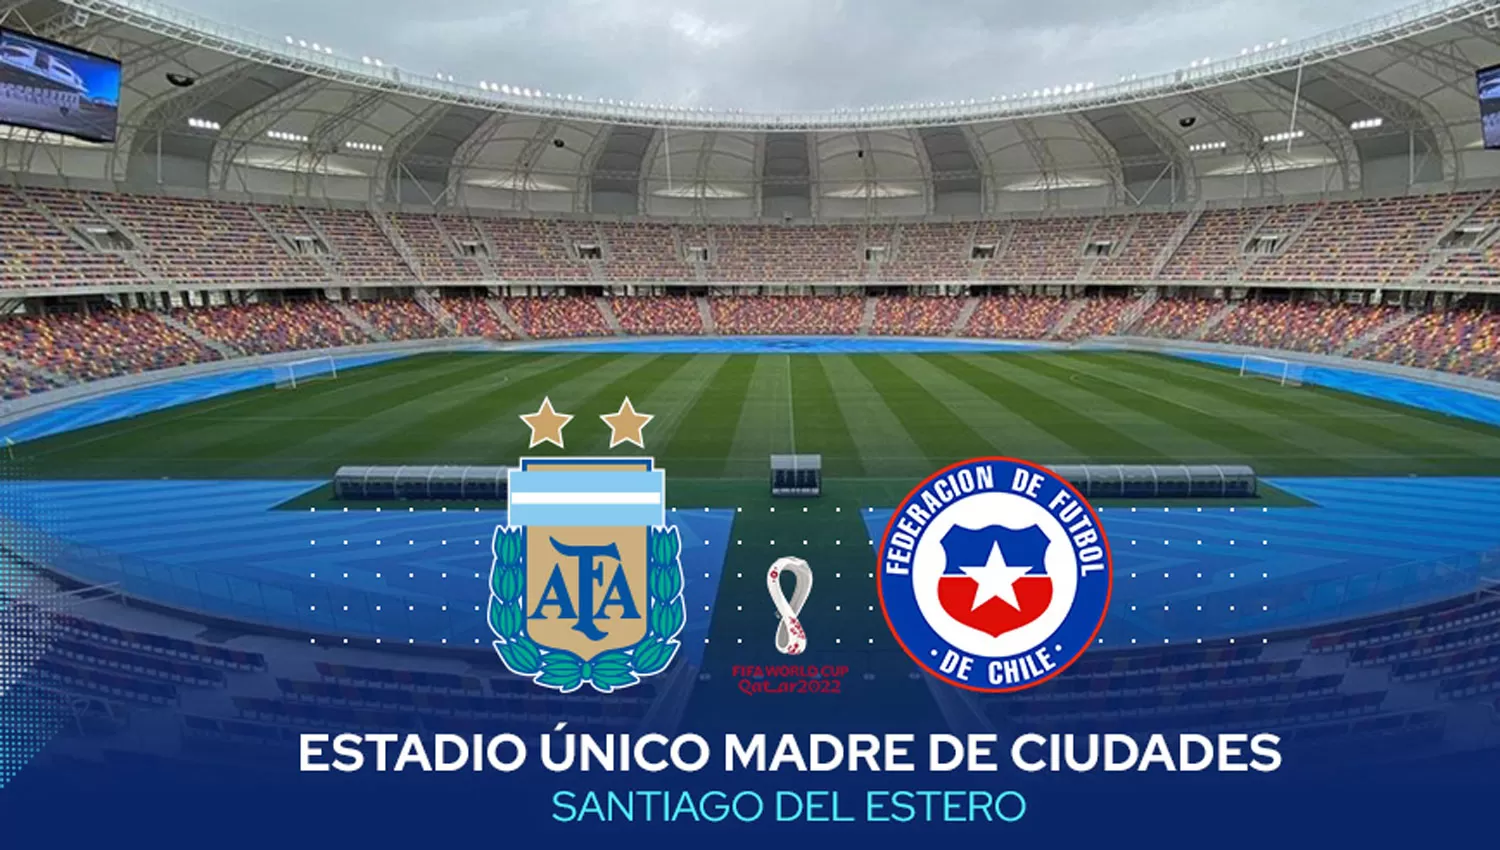 ESTRENO. Argentina y Chile jugarán el primer partido internacional en la corta historia del Madre de Ciudades.